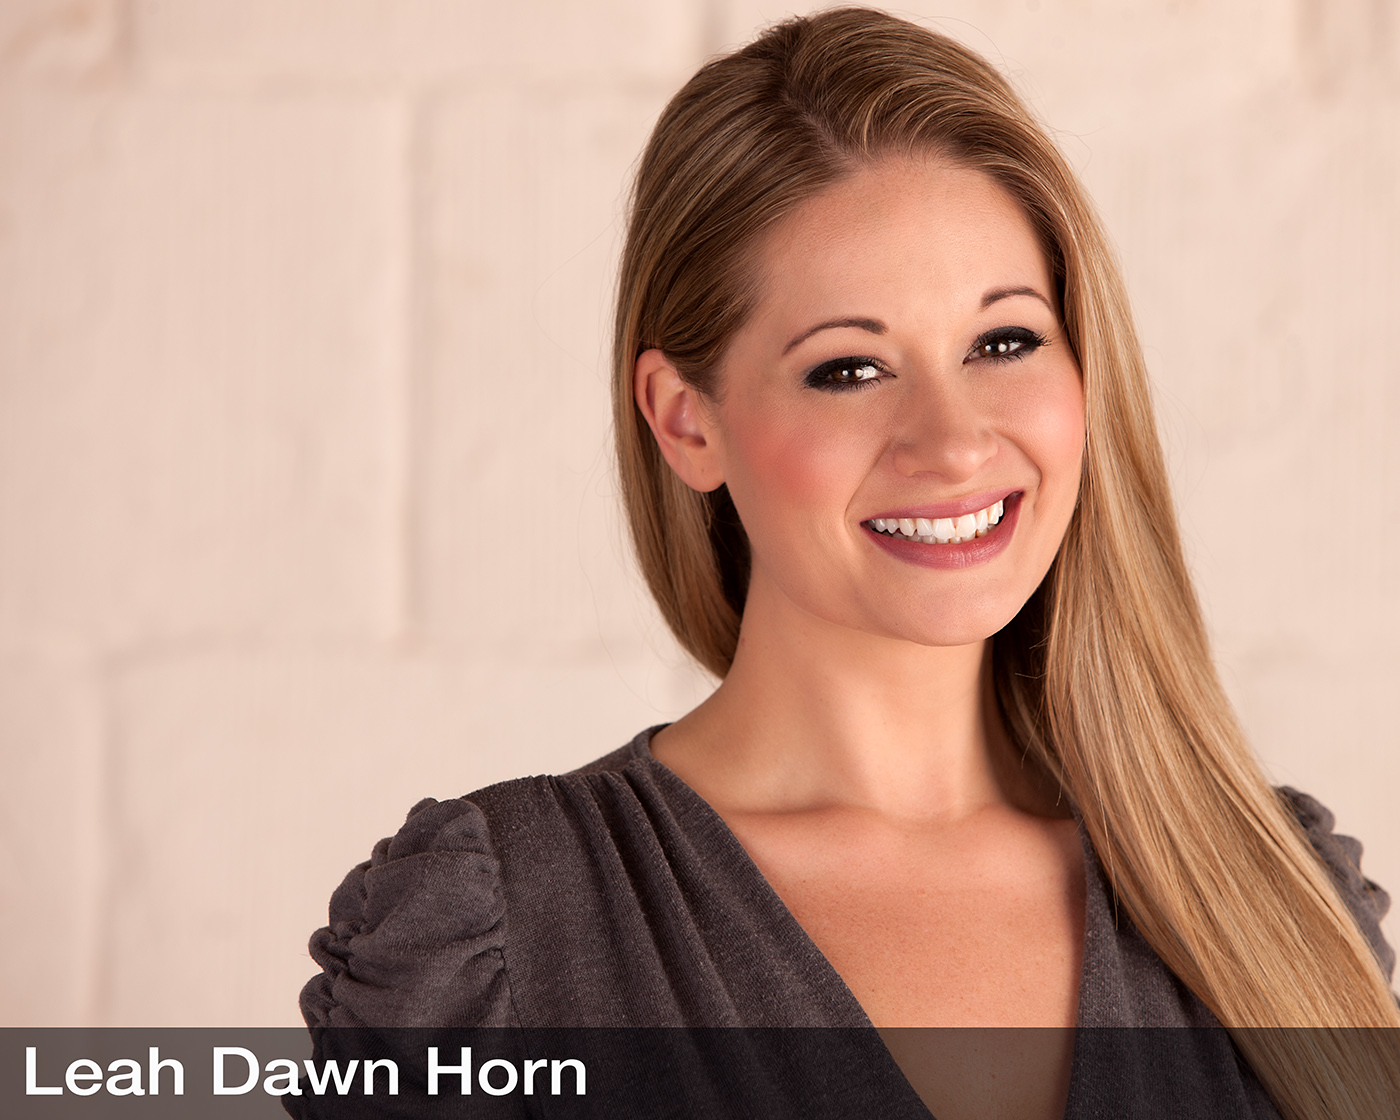 Leah Dawn Horn